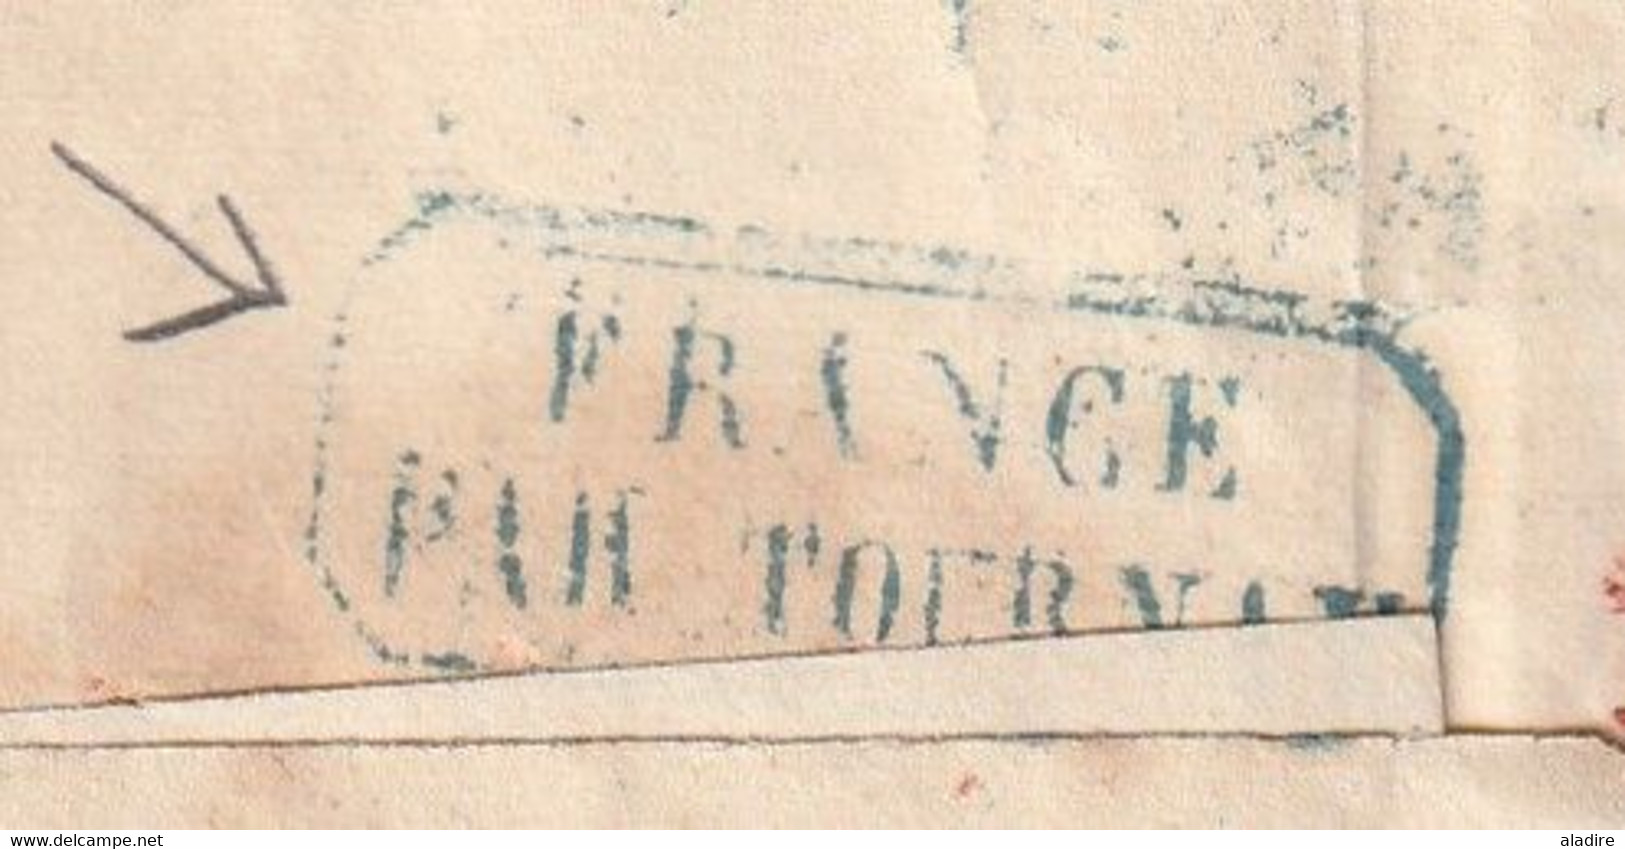 1834 - Enveloppe pliée de PARIS (dateur) vers Tournay Tournai puis Mons, Belgique - taxe 35 !!!